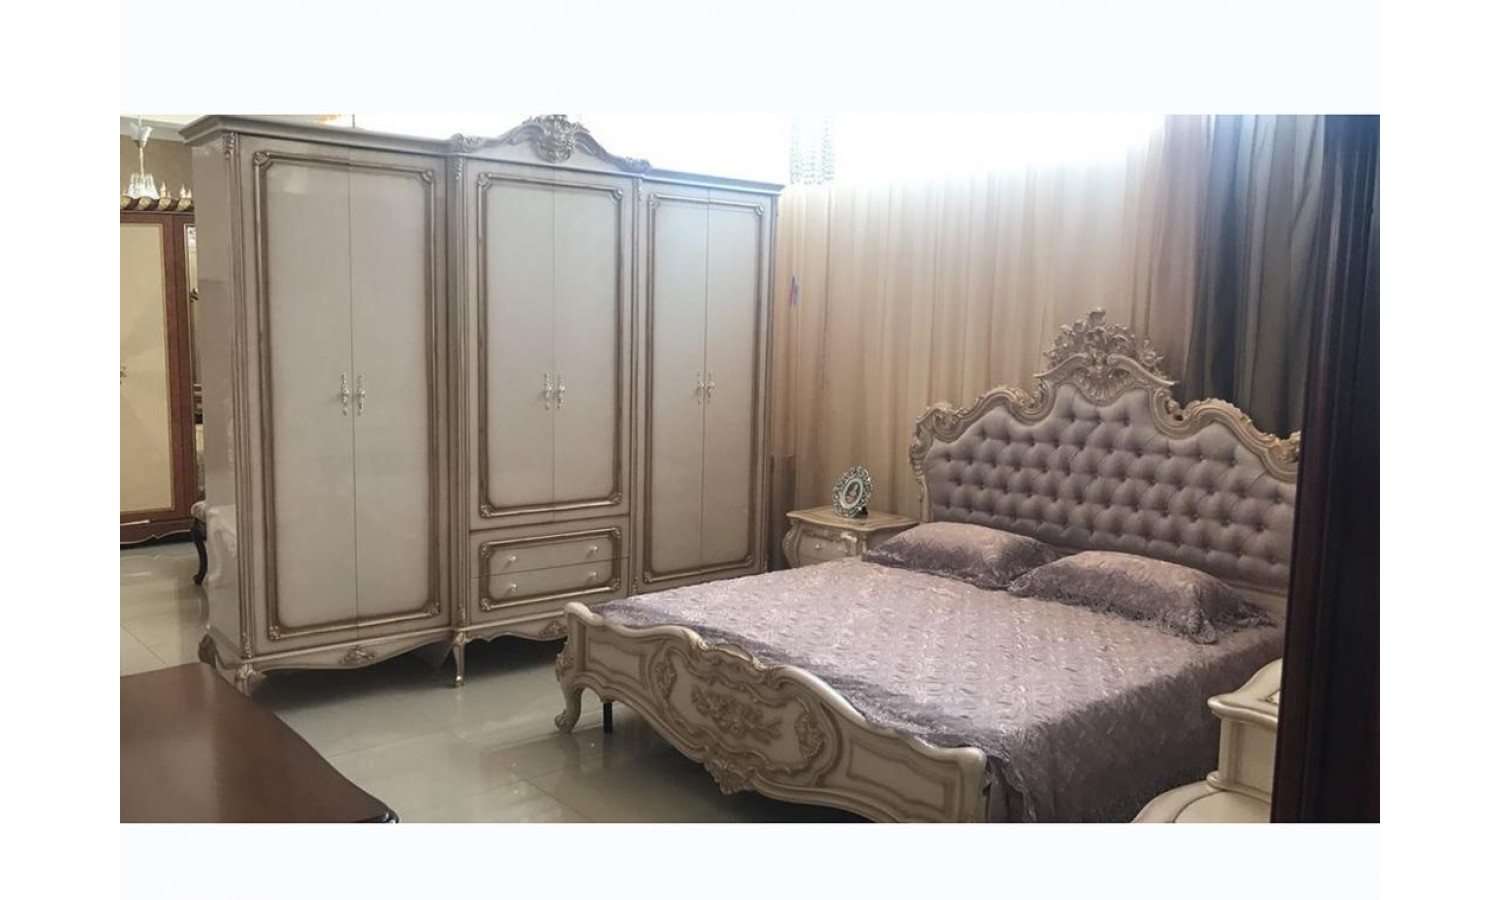 Спальня МИЛАНА MILANA 3886, с 4-дверным шкафом, слоновая кость